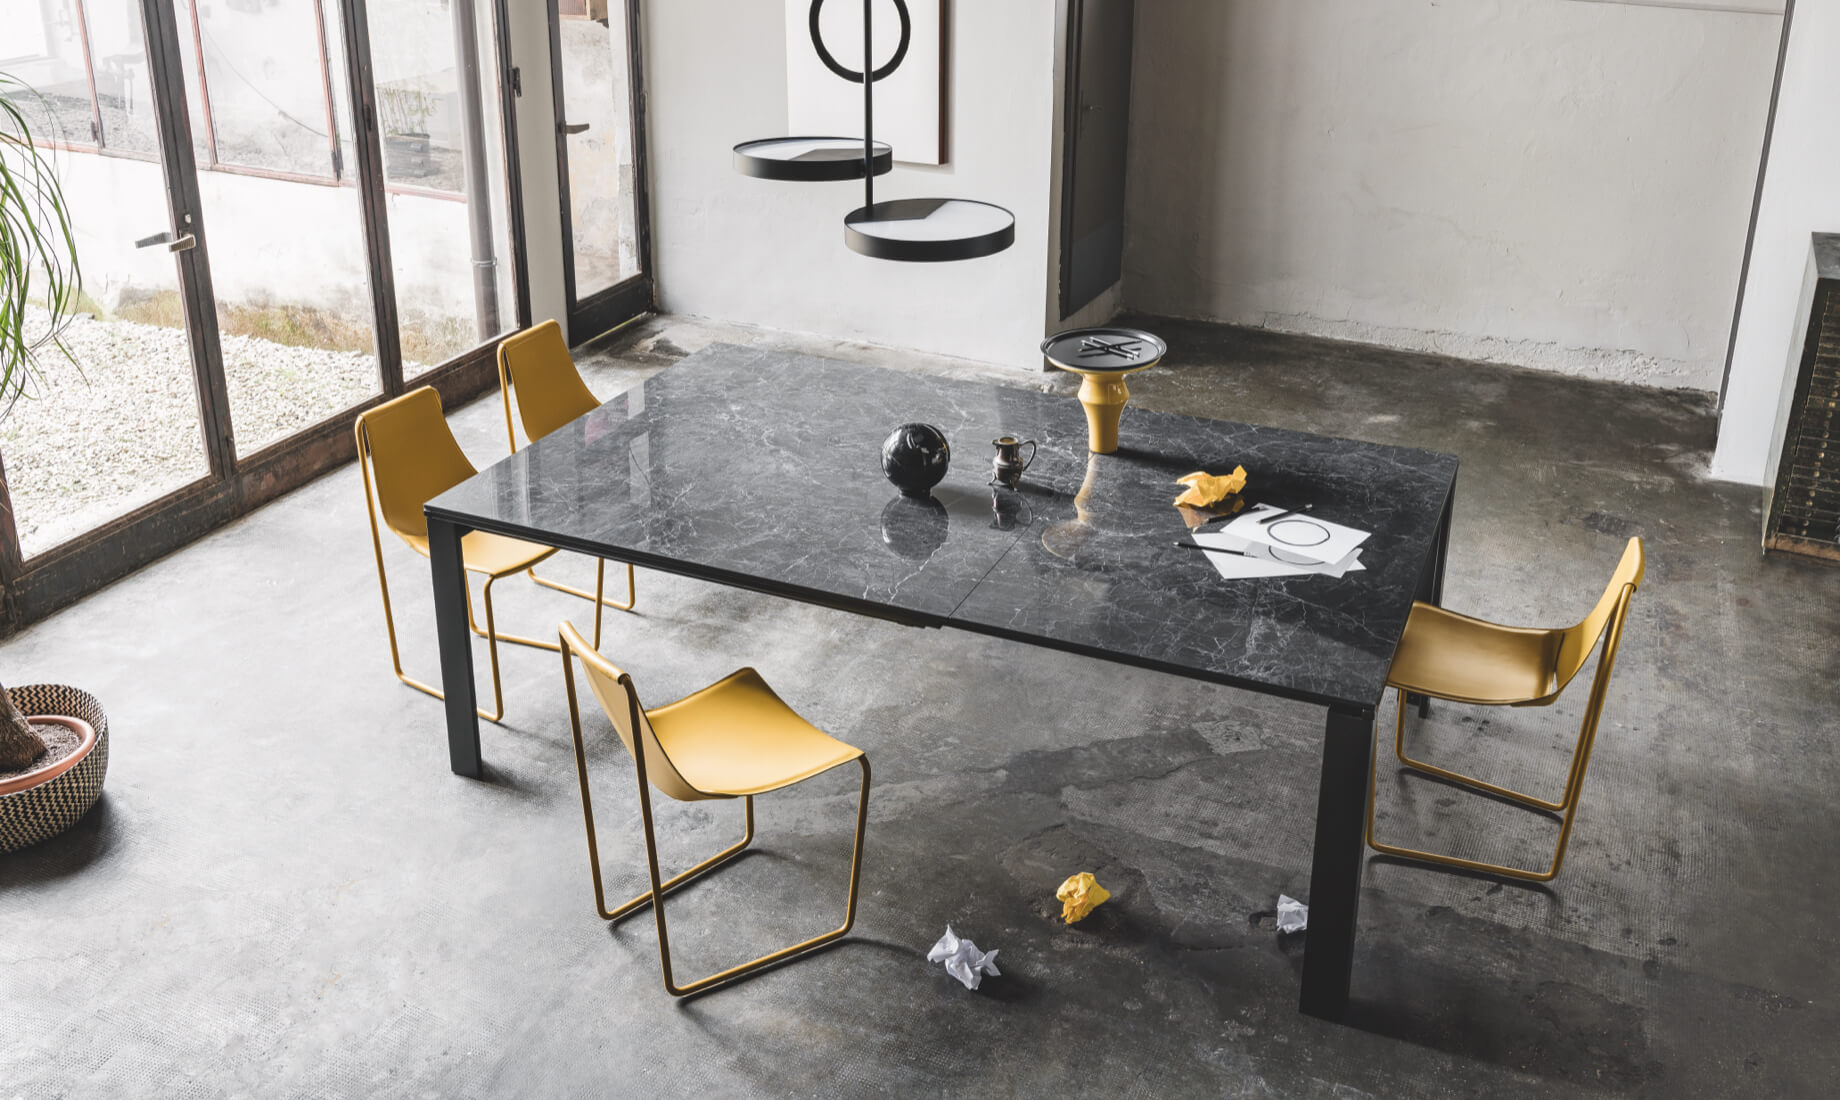 Marcopolo table, design Paolo Vernier. Apelle chair, design Beatriz Sempere.